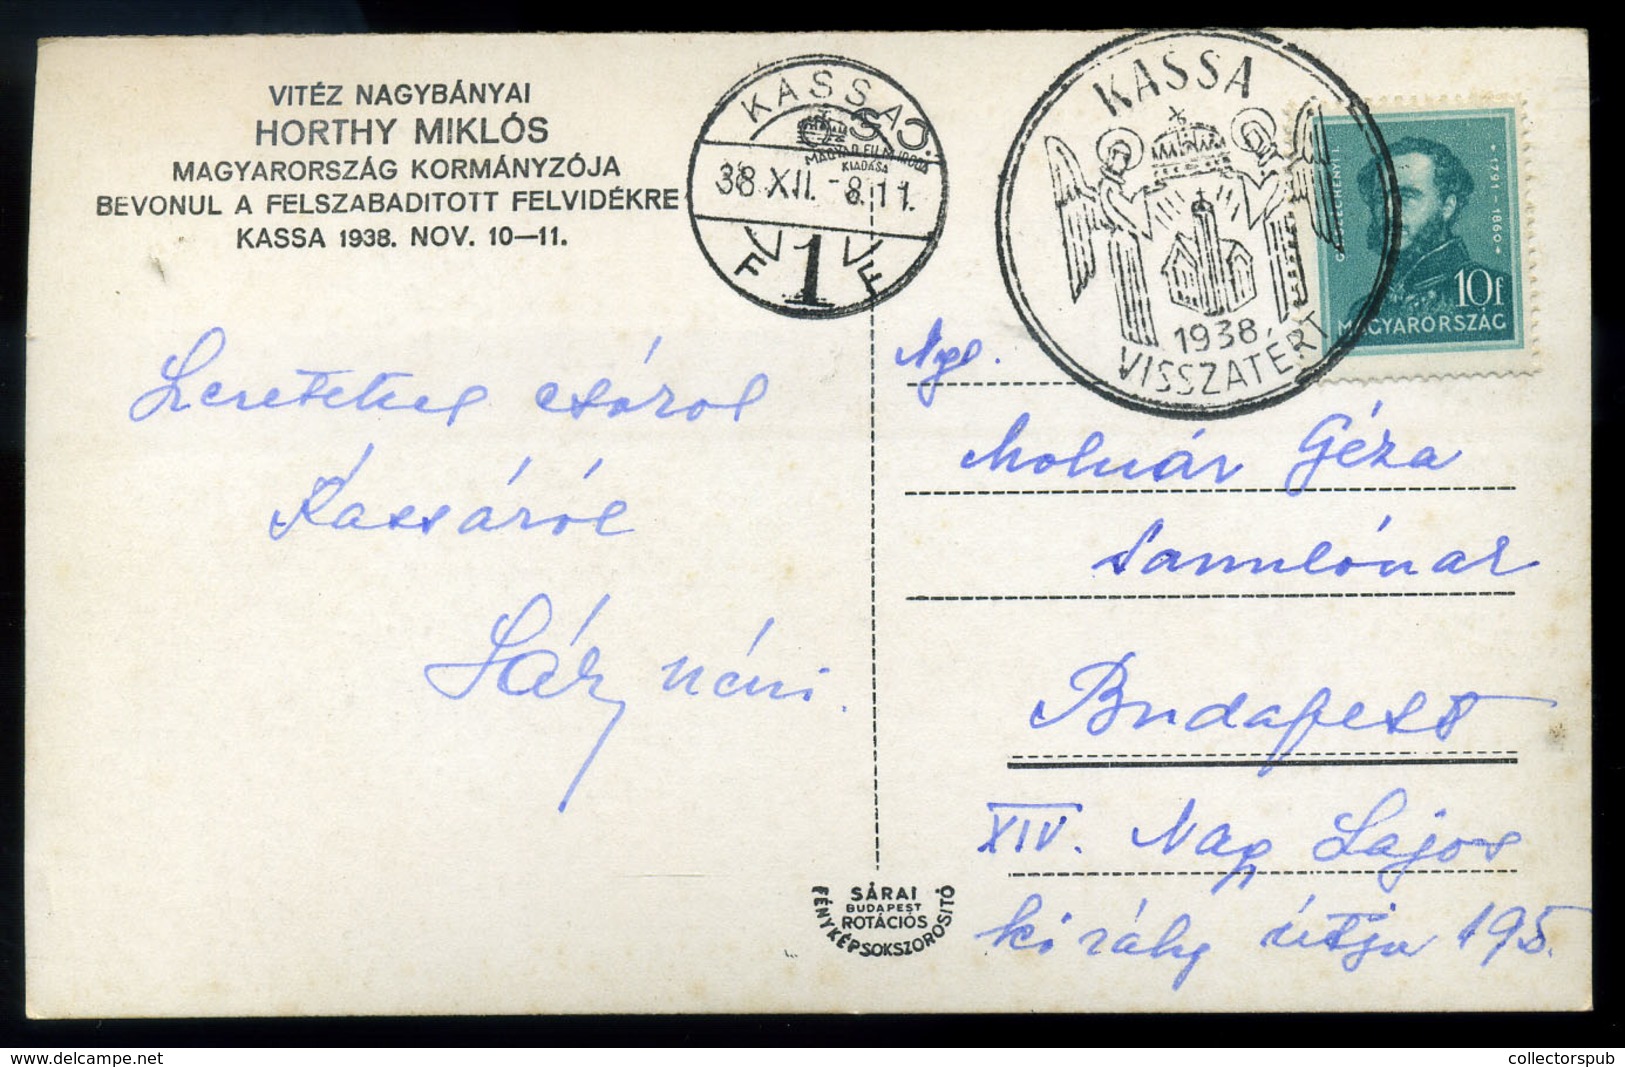 96665 KASSA 1938. Visszatérés Fotós Képeslap  /  KASSA 1938 Military Photo Vintage Pic. P.card HUNGARY / SLOVAKIA - Hungary